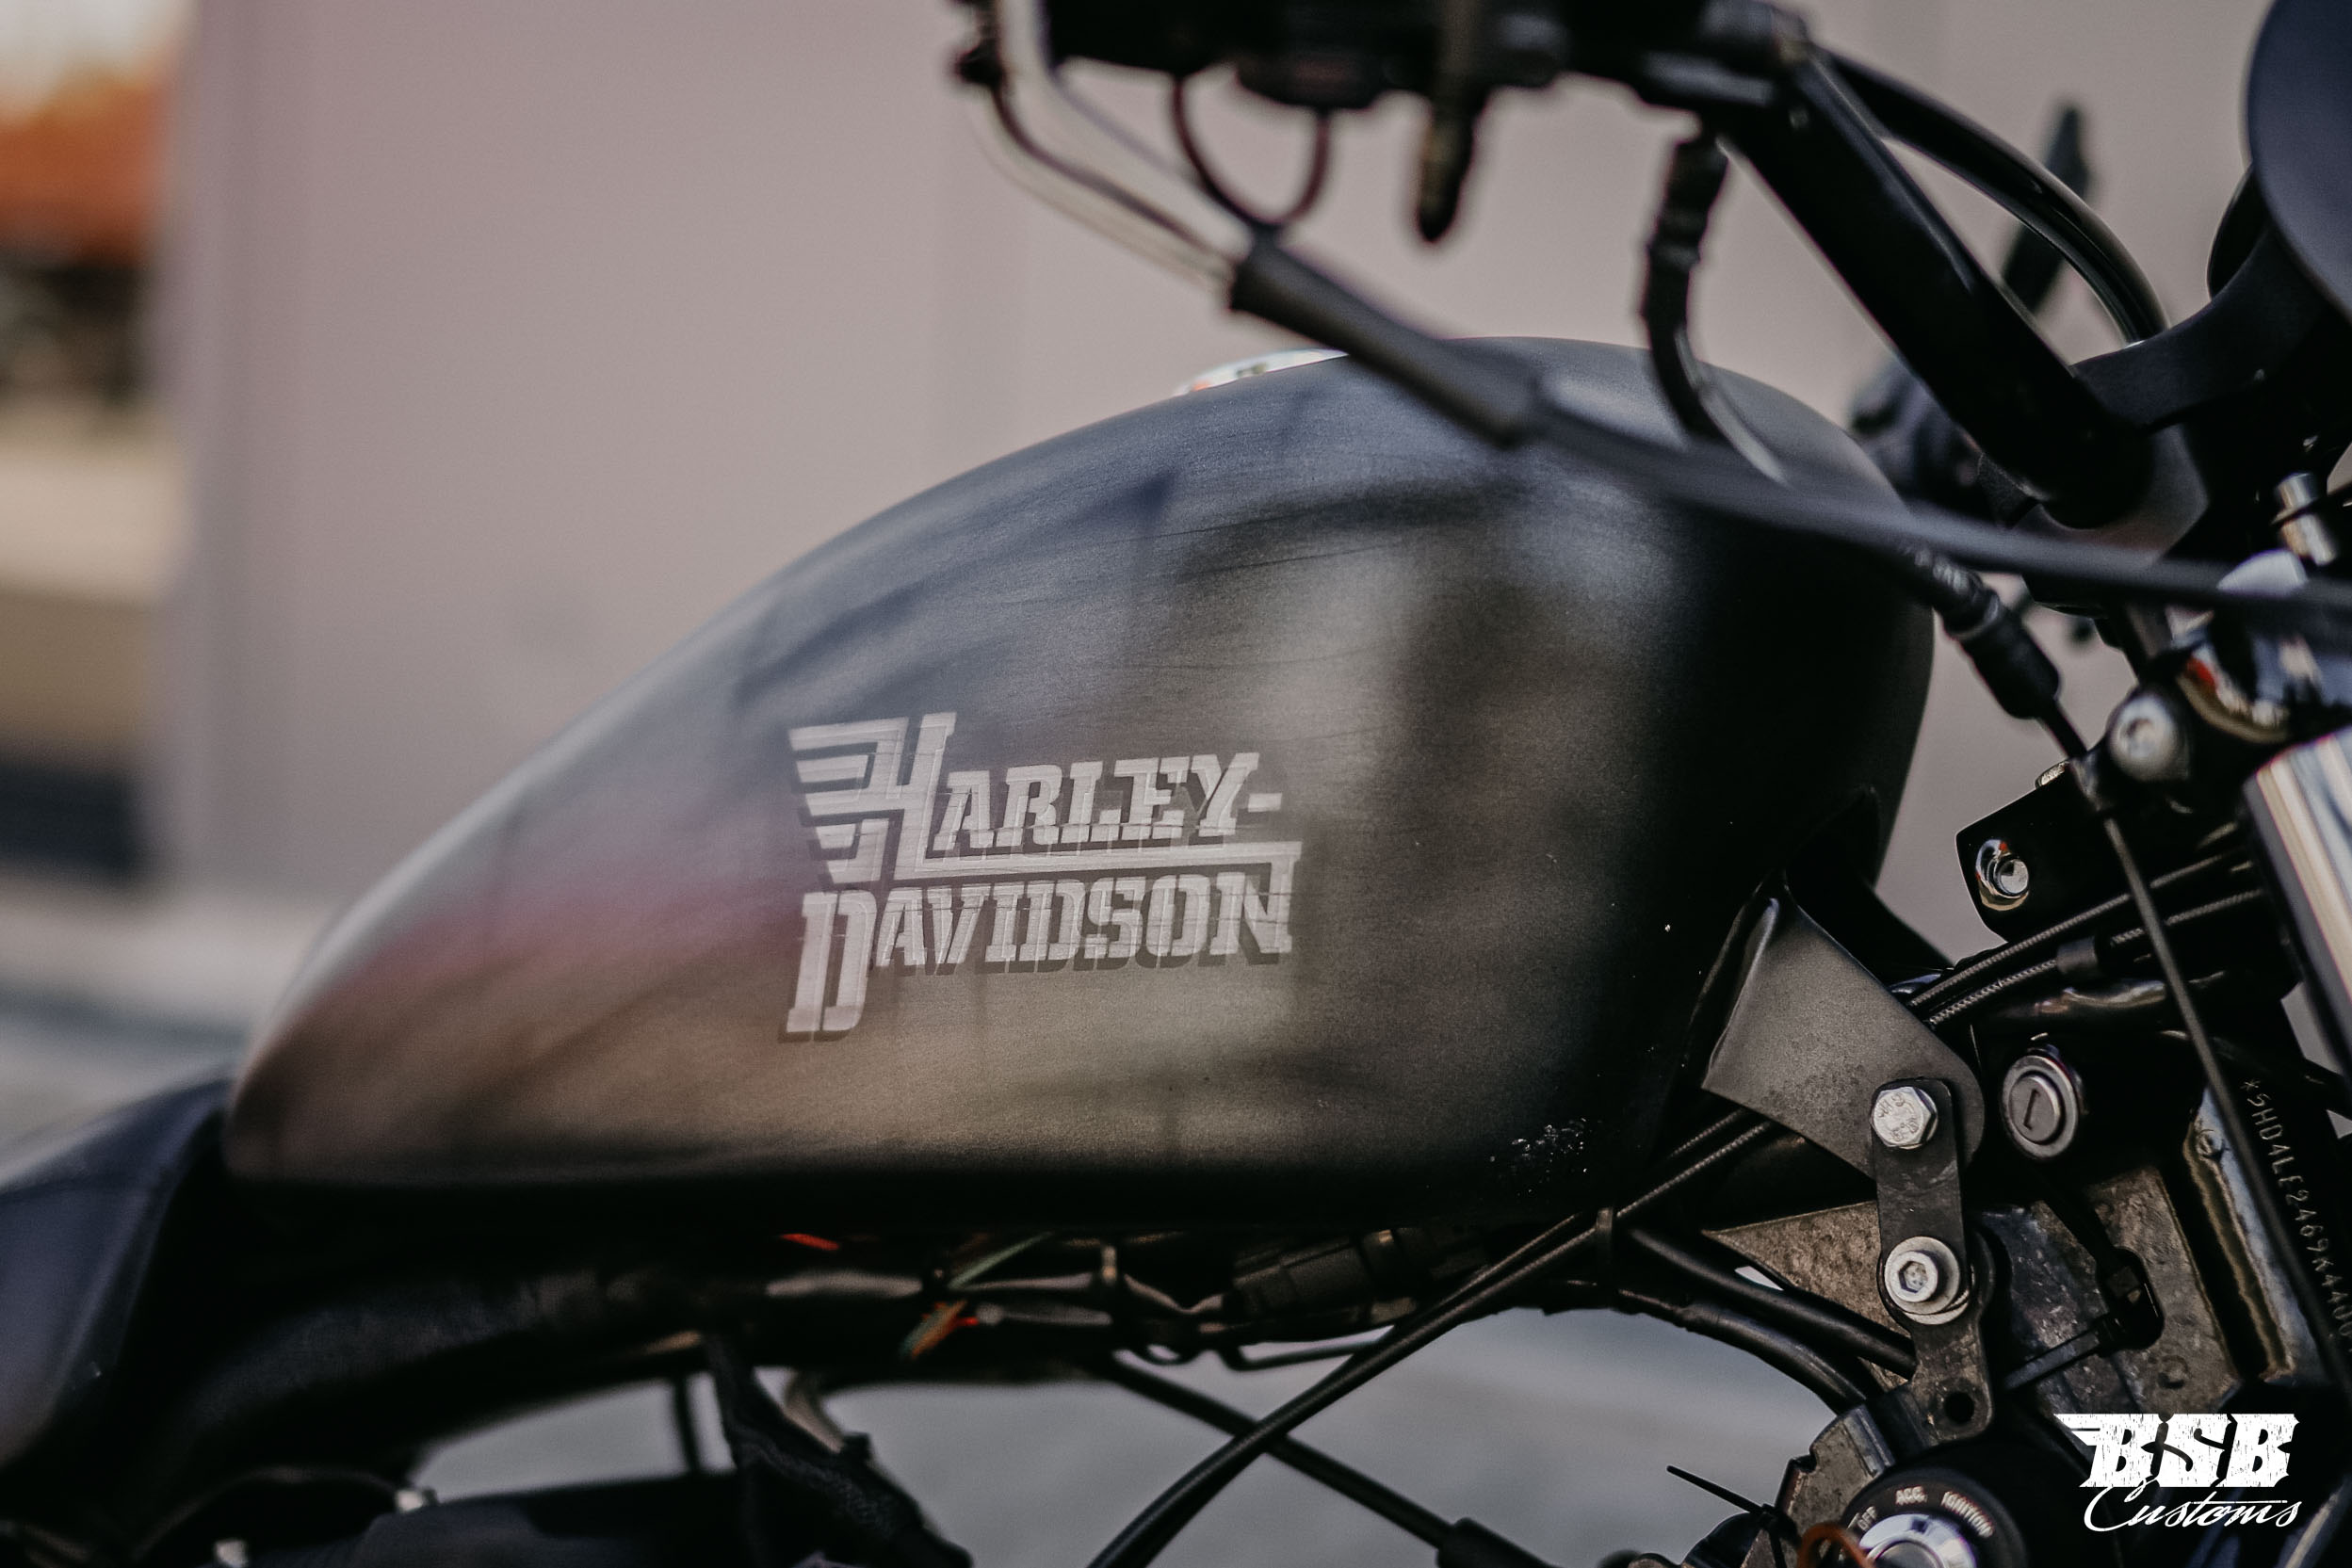 2009 Harley Davidson XL 883 mit verstallbarer MCJ Anlage Airbrush